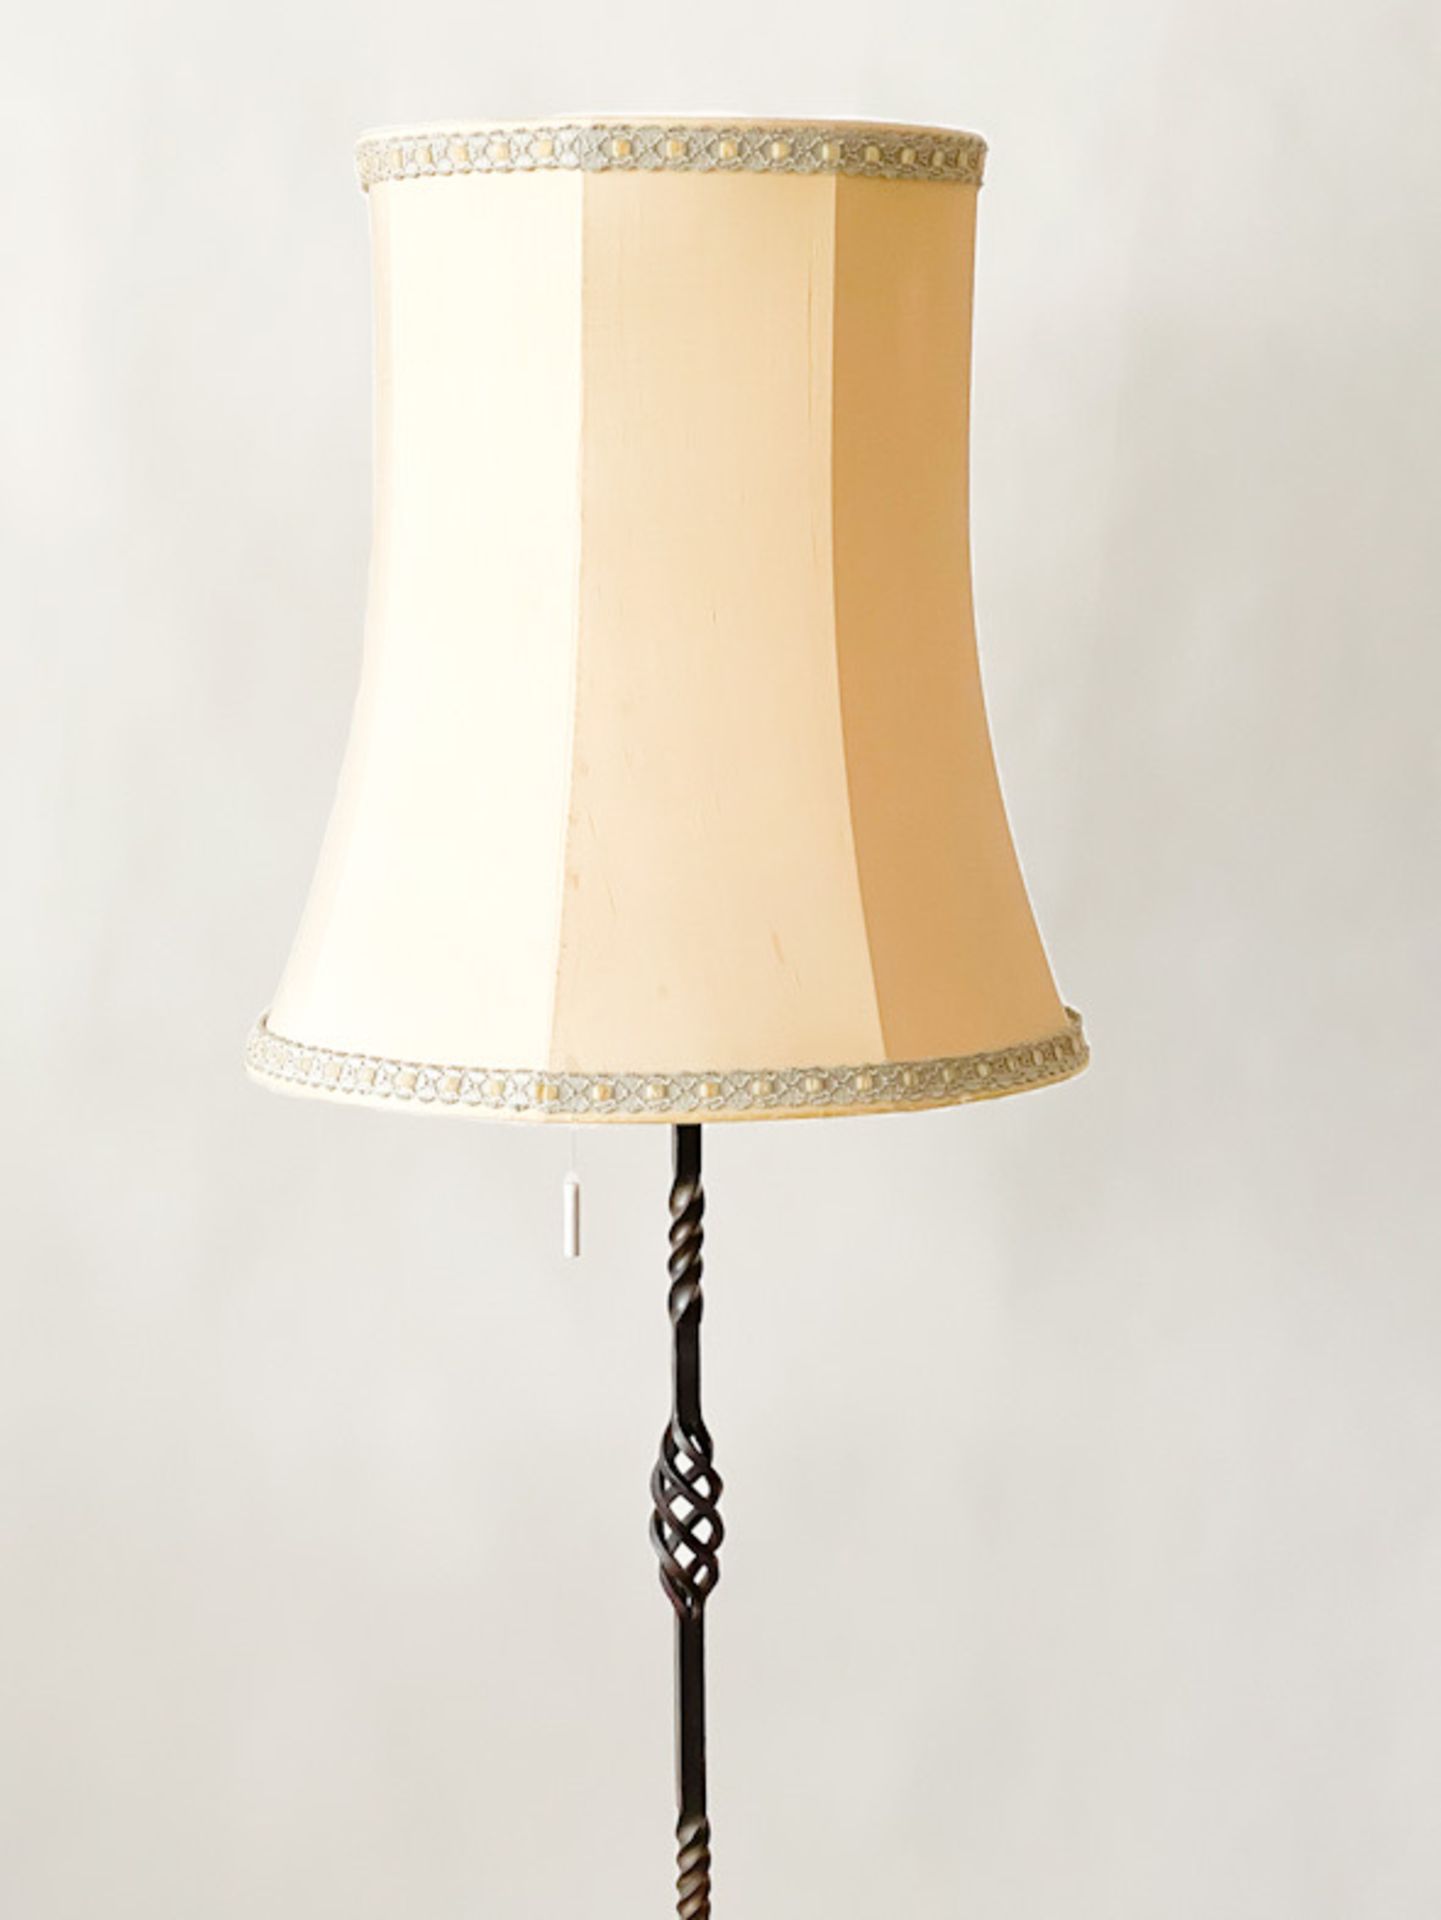 Schmiedeiserne Stehlampe - Image 2 of 3